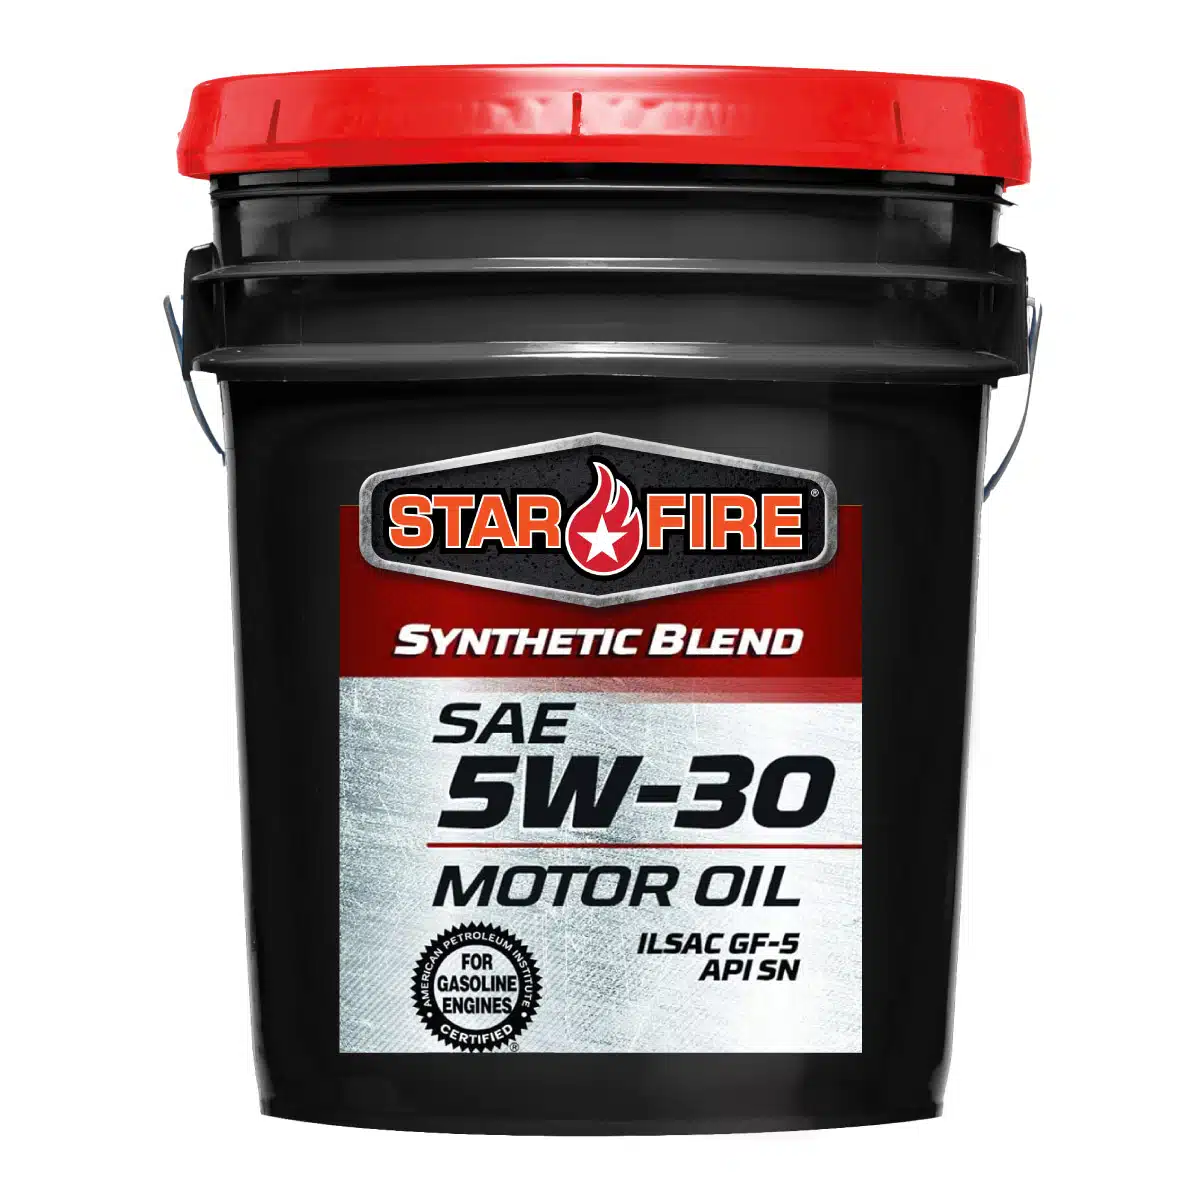 5 Gallon Pail Motor oil 5W-30